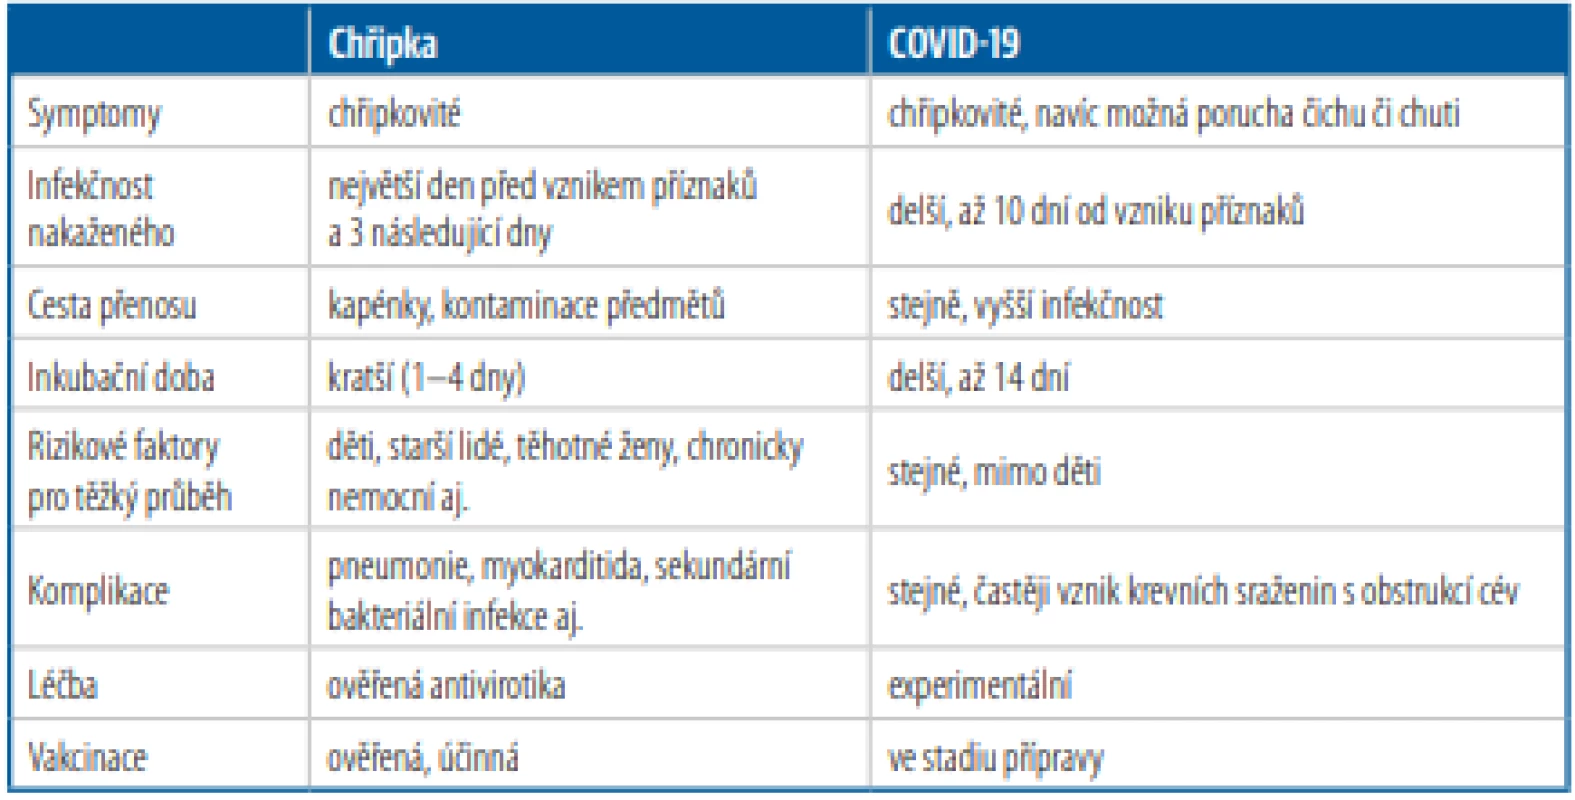 Porovnání rozdílů chřipky a COVID-19 [Upraveno podle 22, 23]